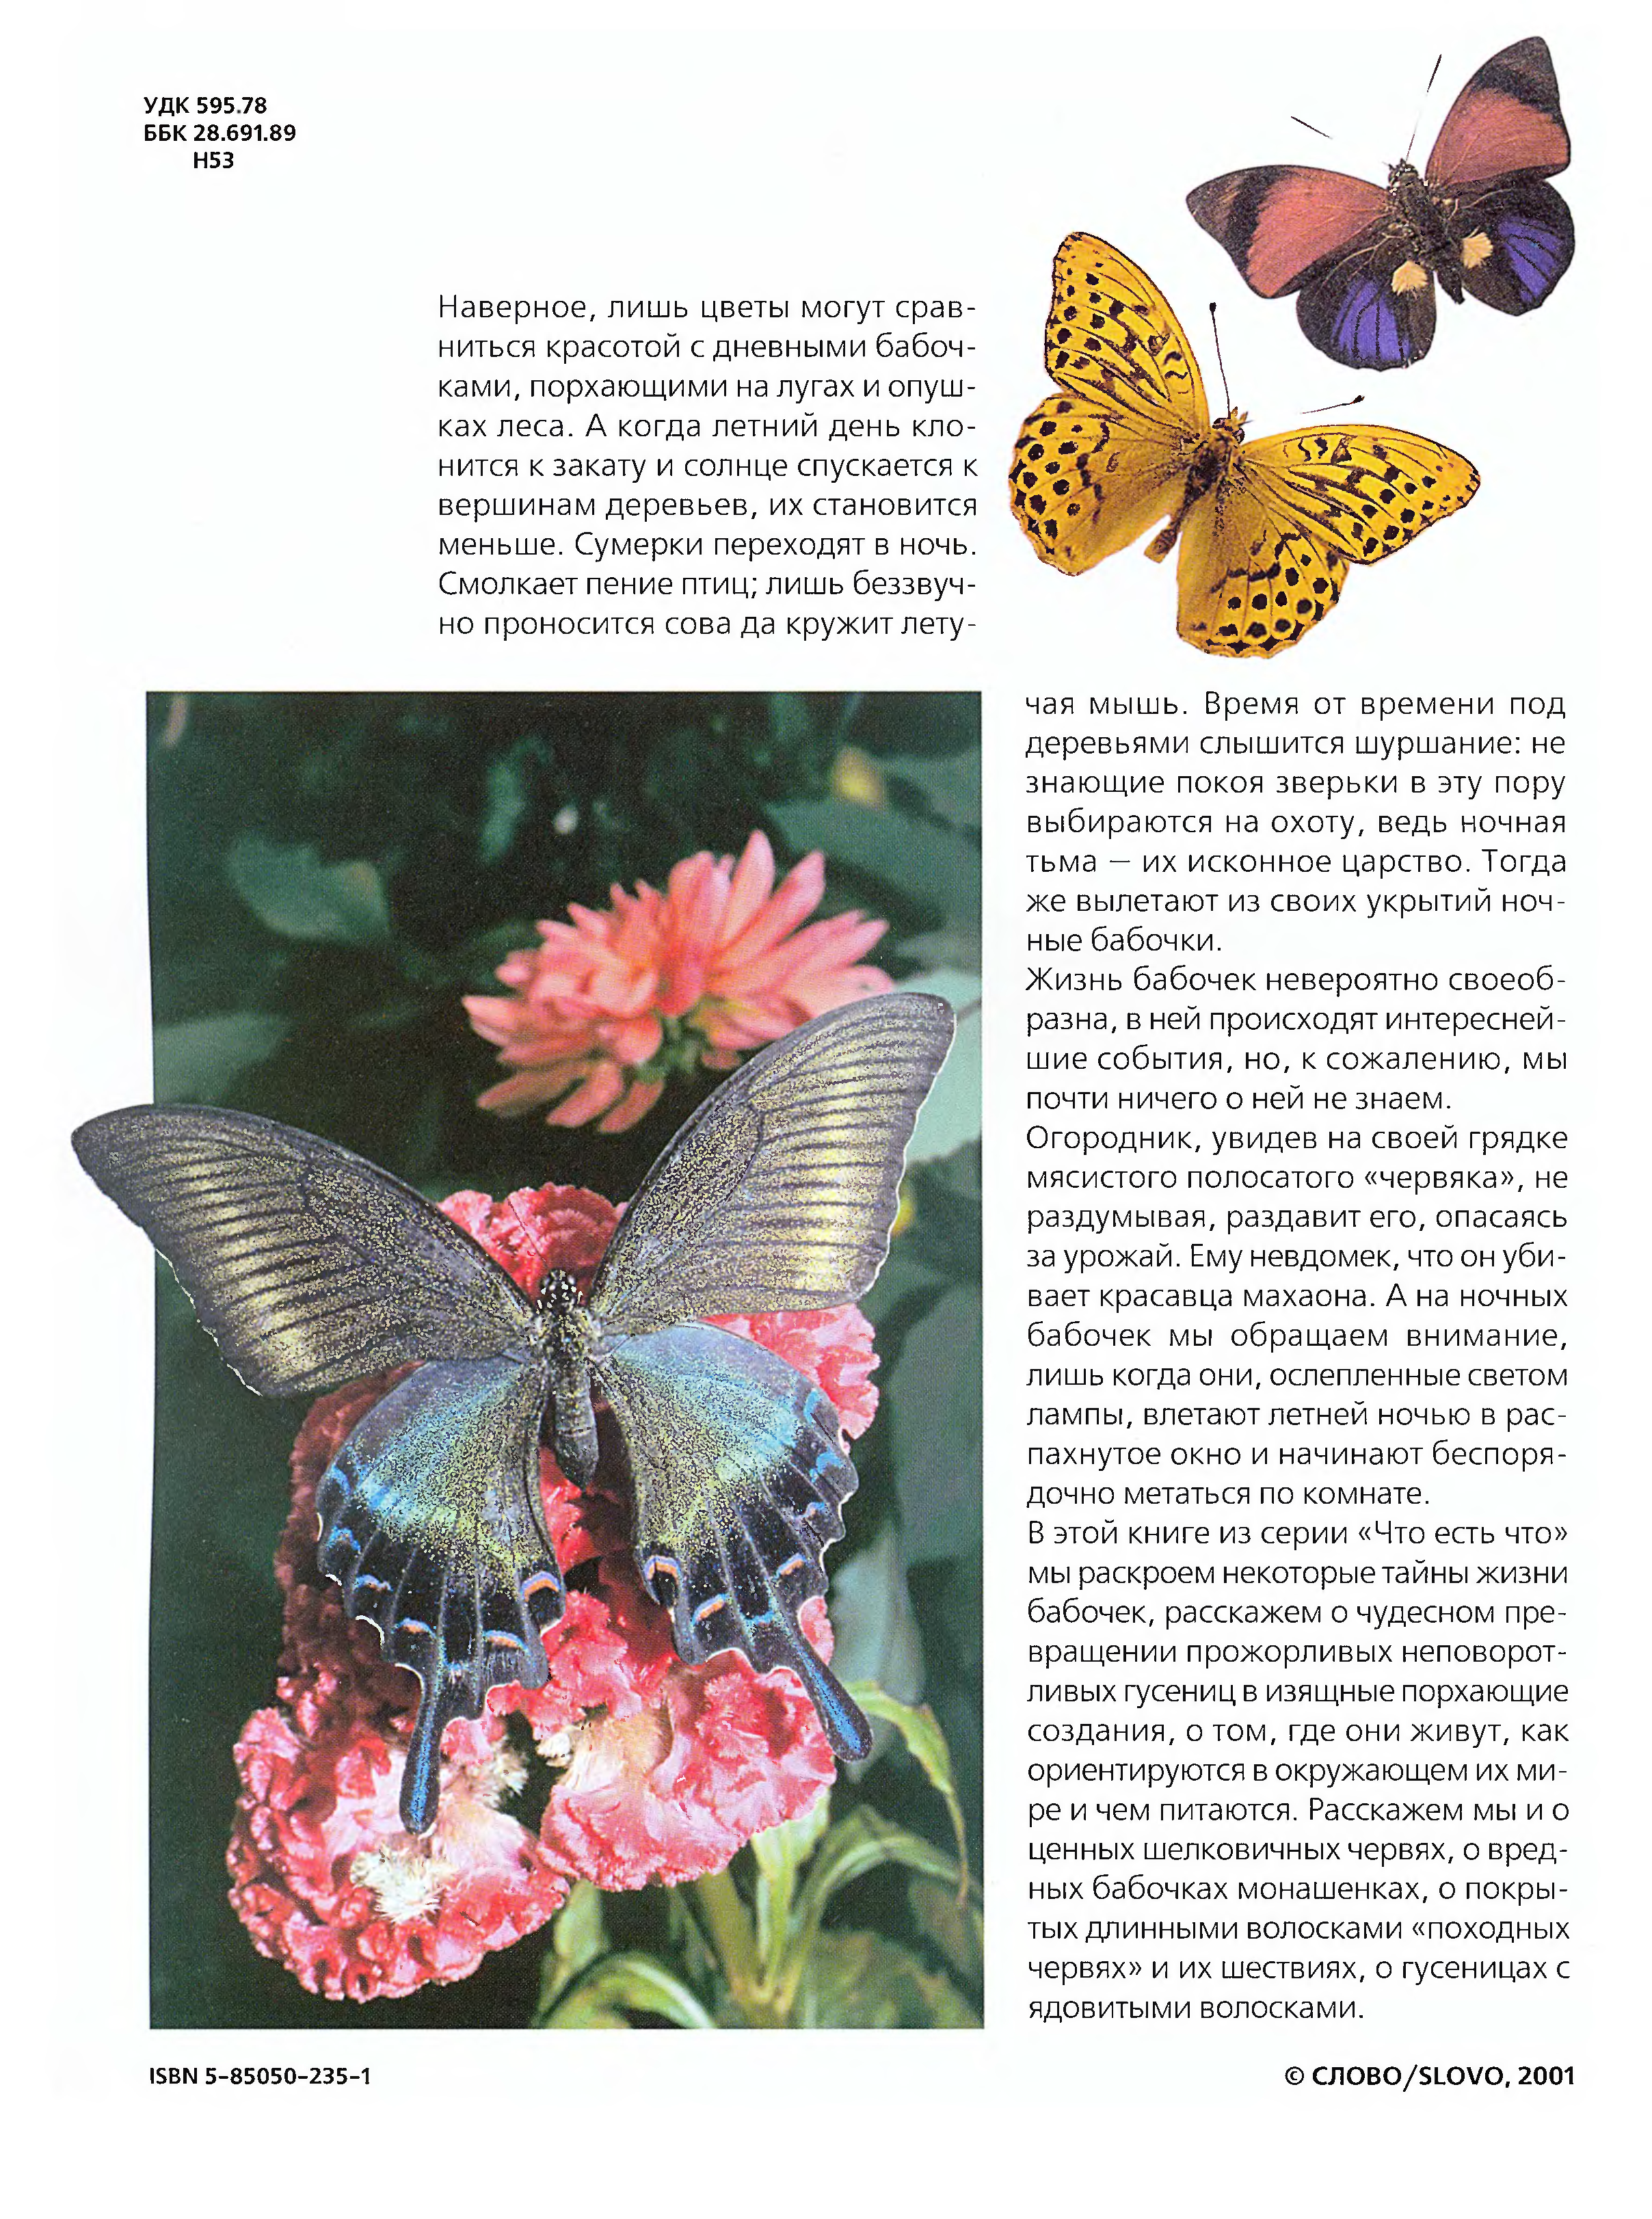 Бабочки в жизни людей. Жизнь бабочки. Читать про бабочек. Книга с бабочками. Книги про бабочек научные.